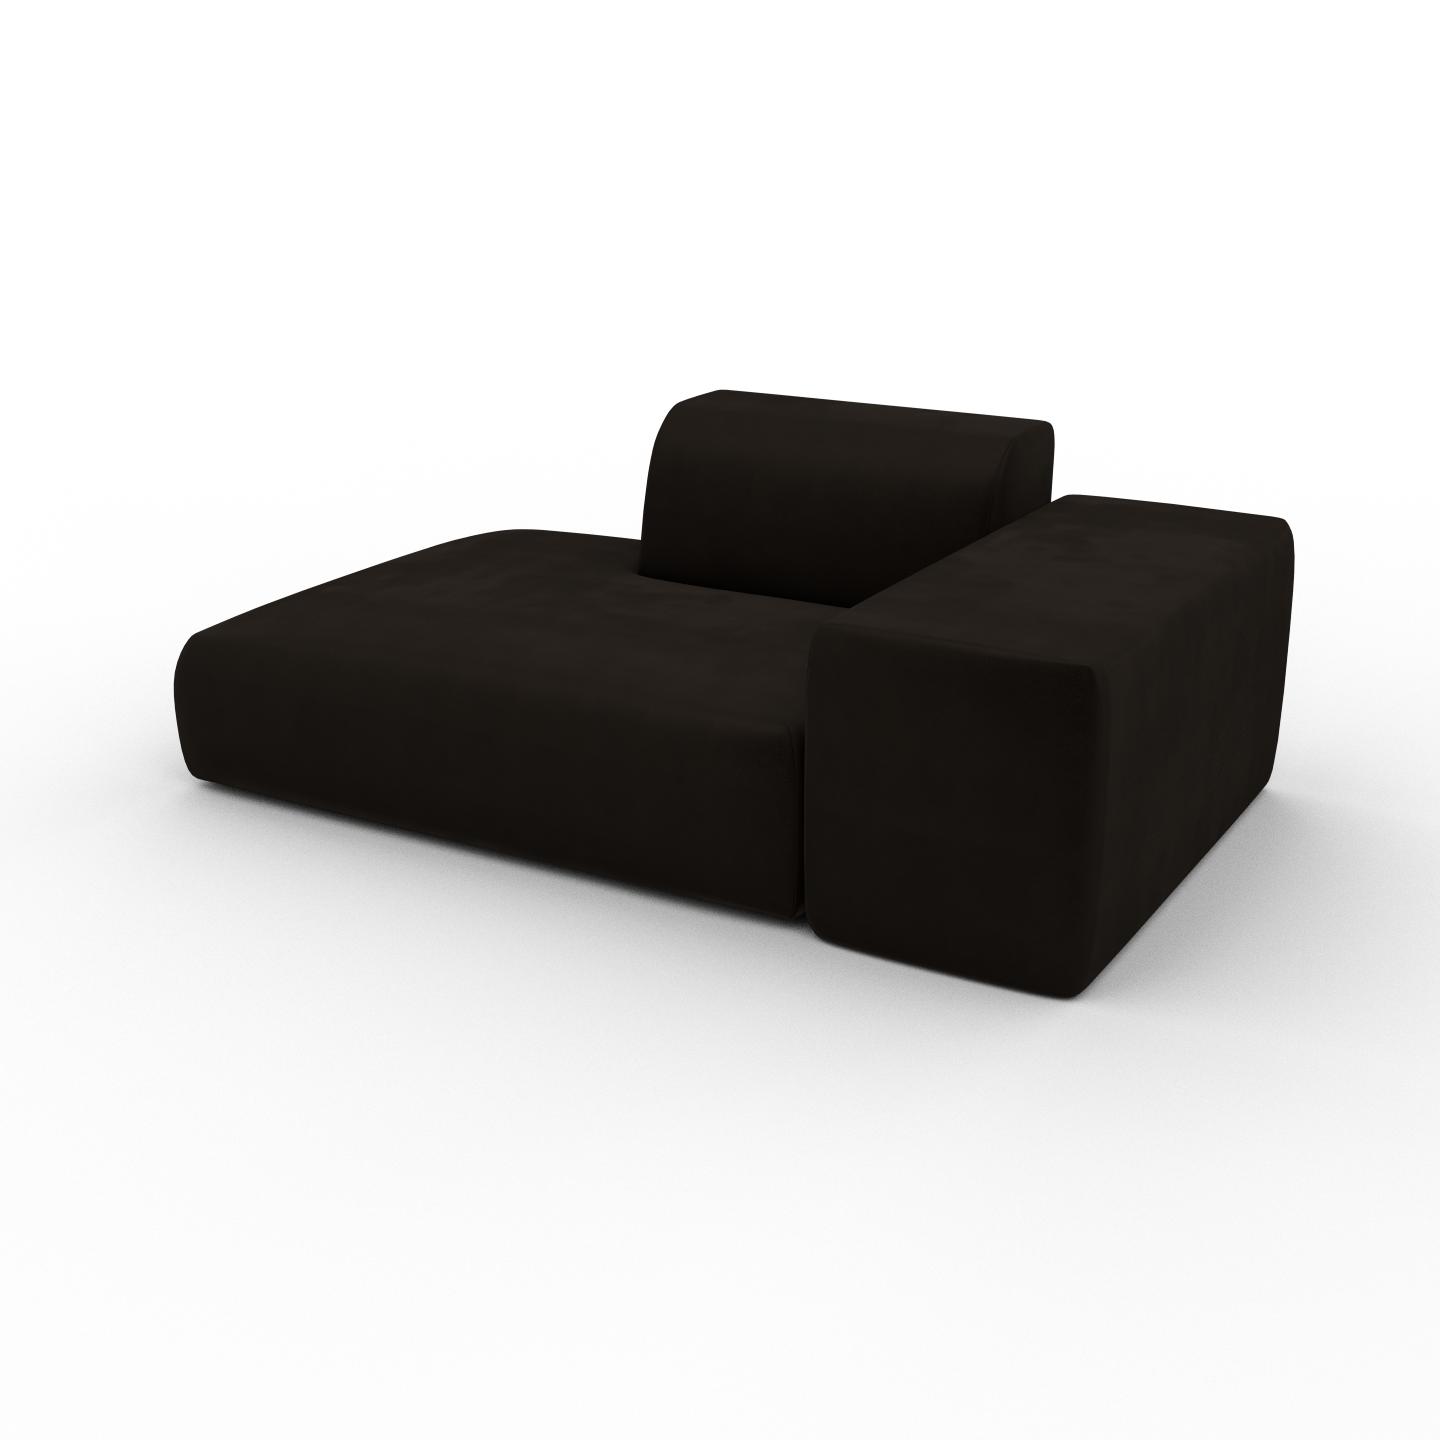 MYCS Sofa Samt Kaffeebraun - Moderne Designer-Couch: Hochwertige Qualität, einzigartiges Design - 182 x 72 x 107 cm, Komplett anpassbar